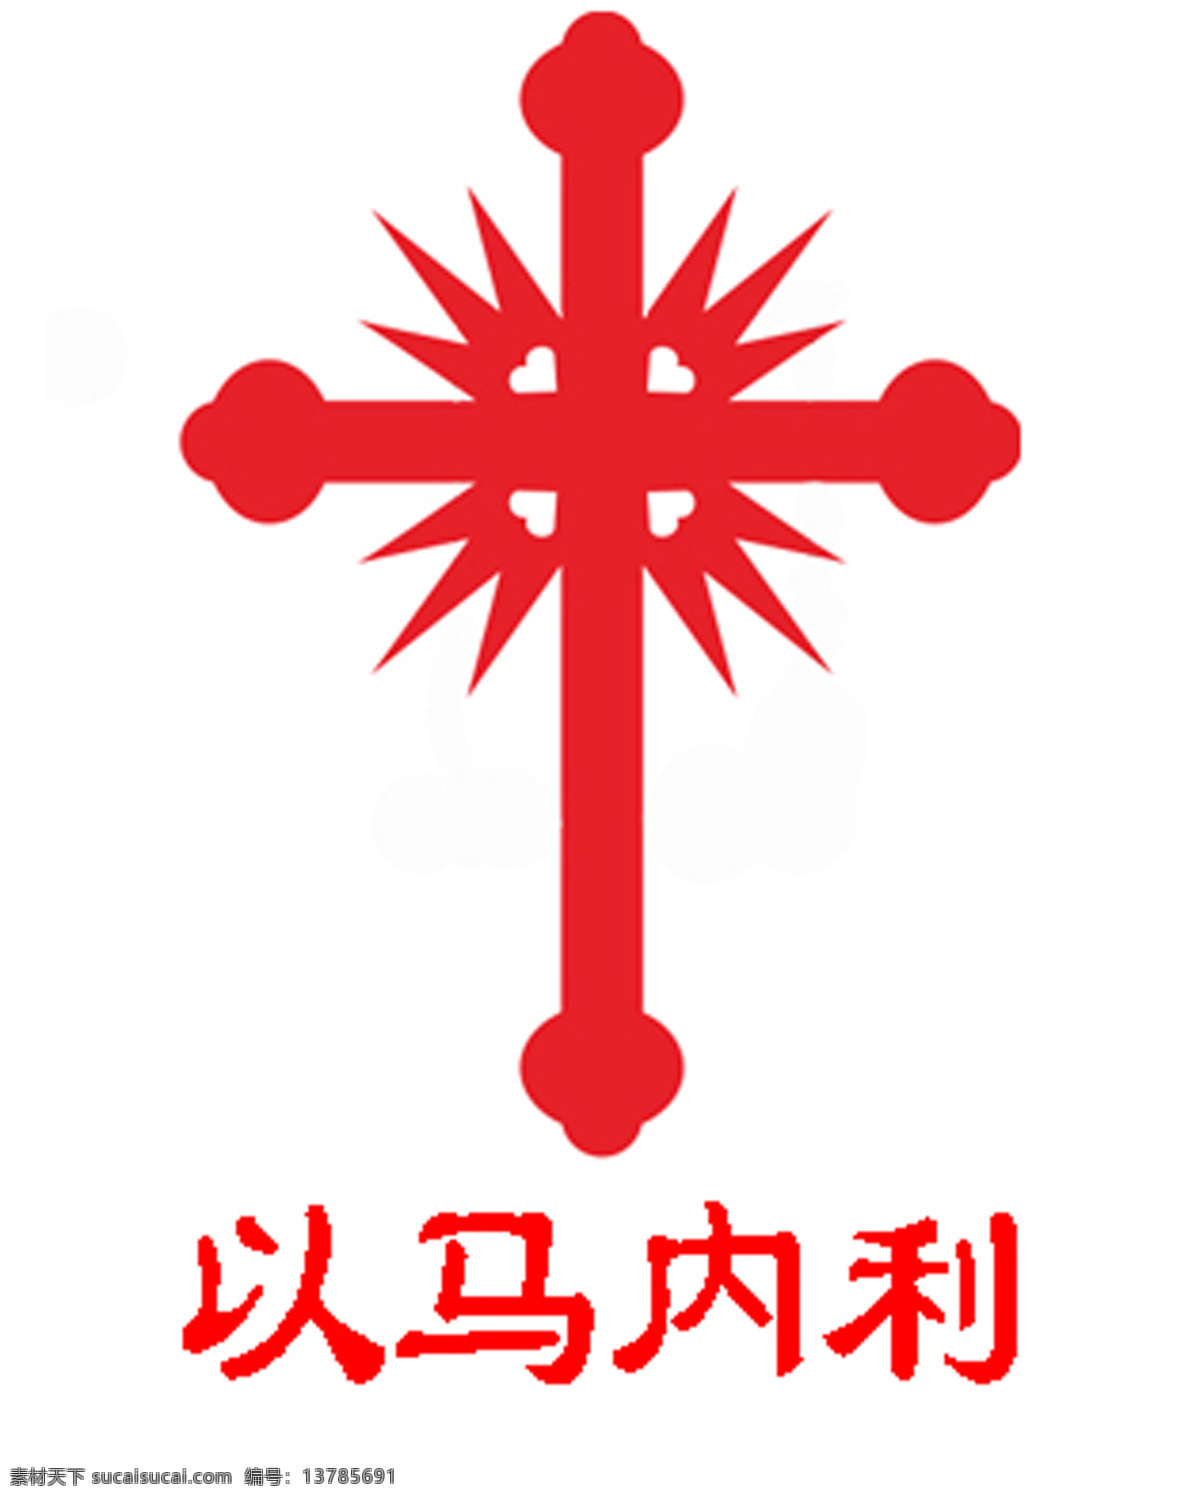 十字架 以马内利 耶稣 红色 基督教 标志图标 其他图标